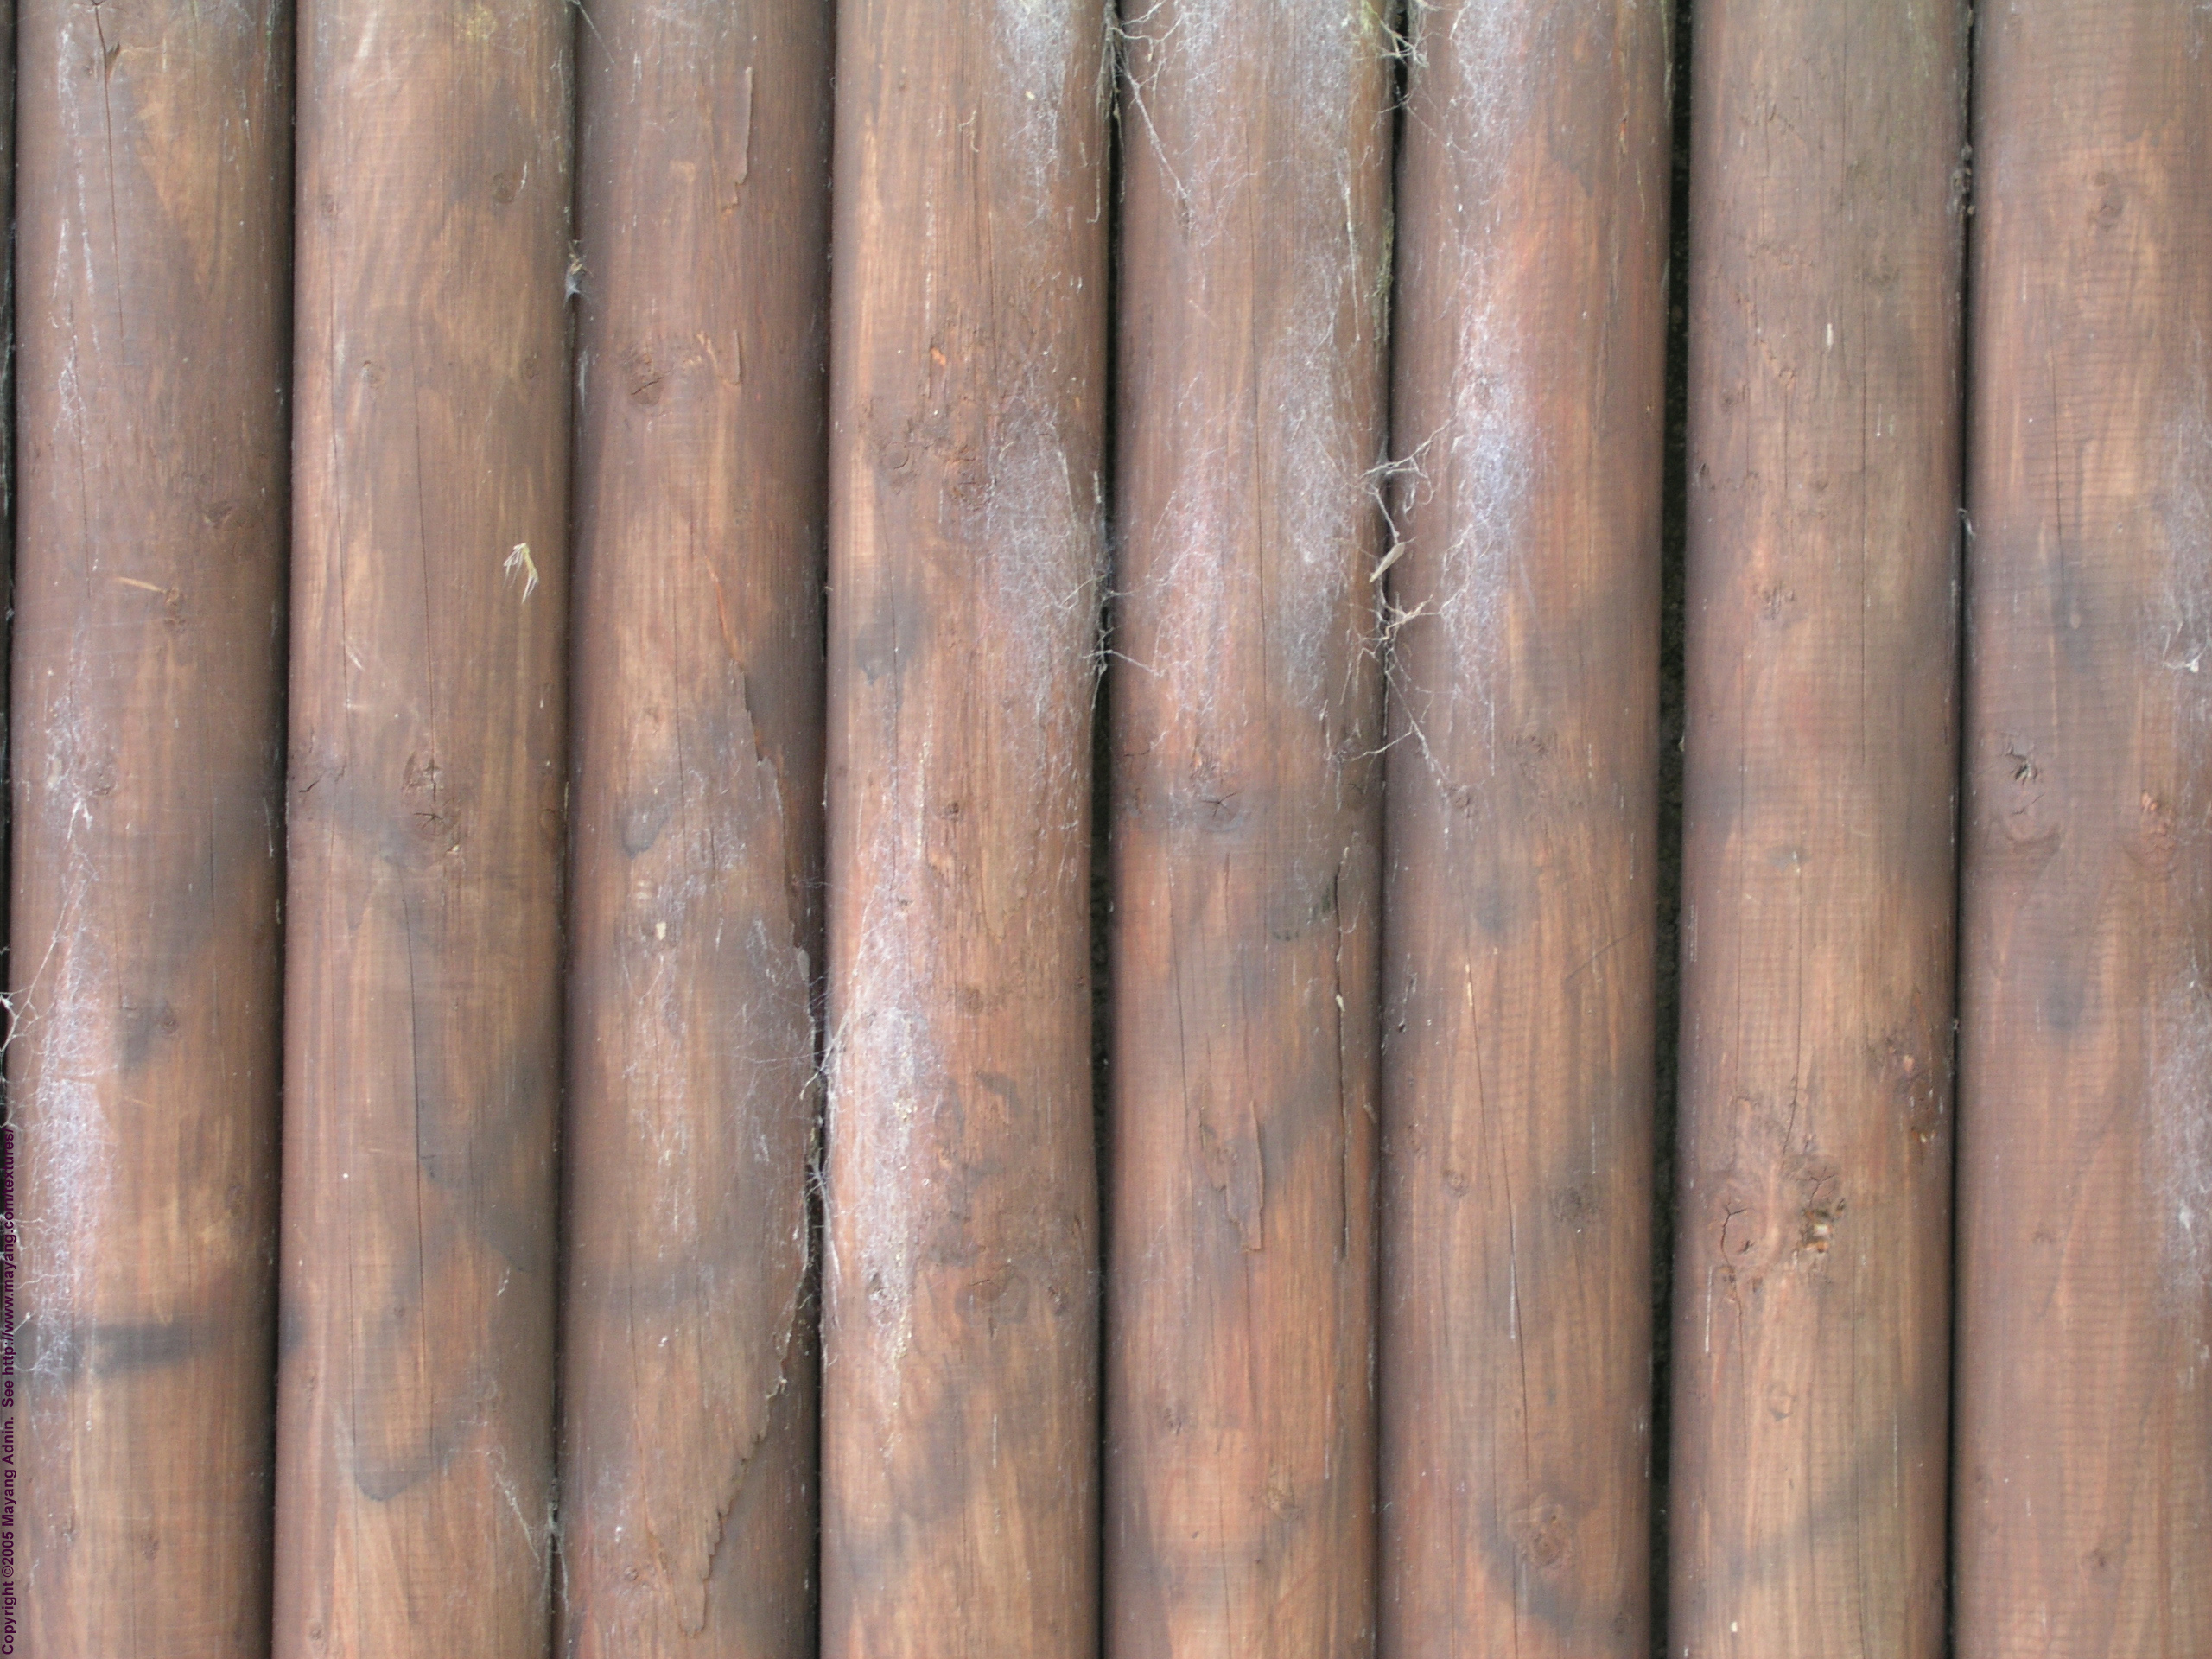 Текстура дерево, скачать бесплатно, фото, download wood texture, background